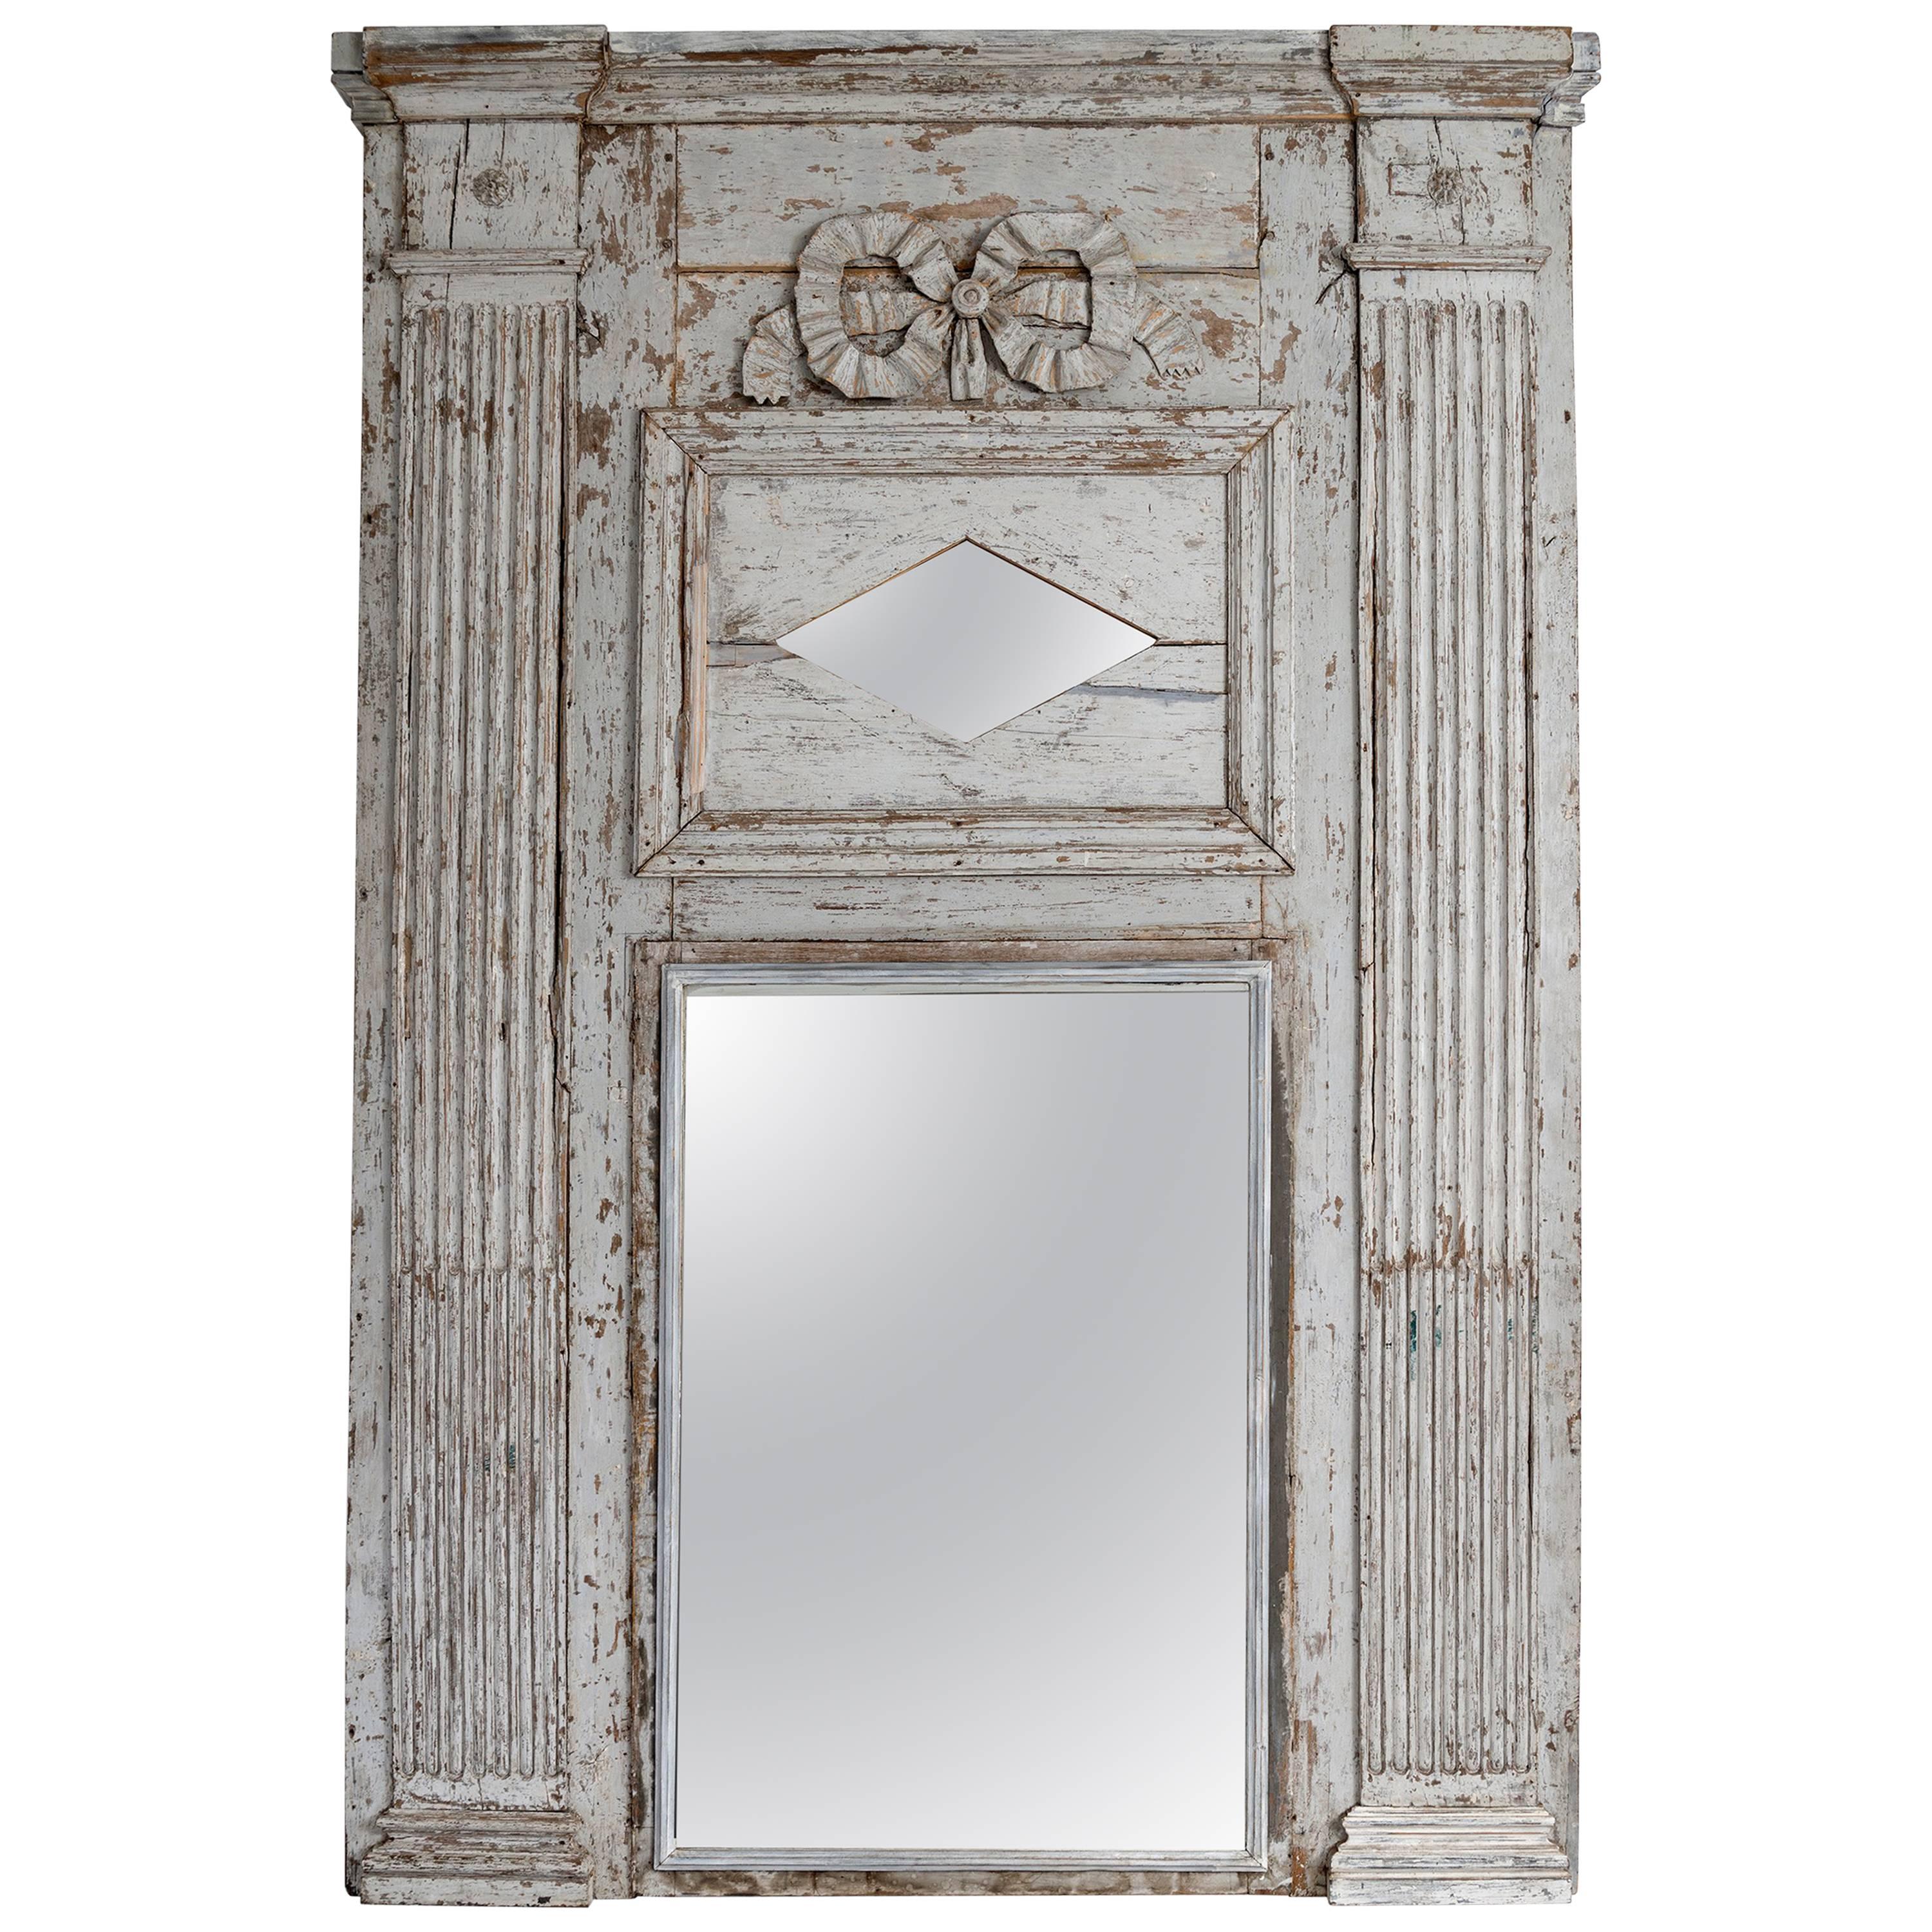 Trumeau-Spiegel, selten, großformatig, Louis XVI.-Stil